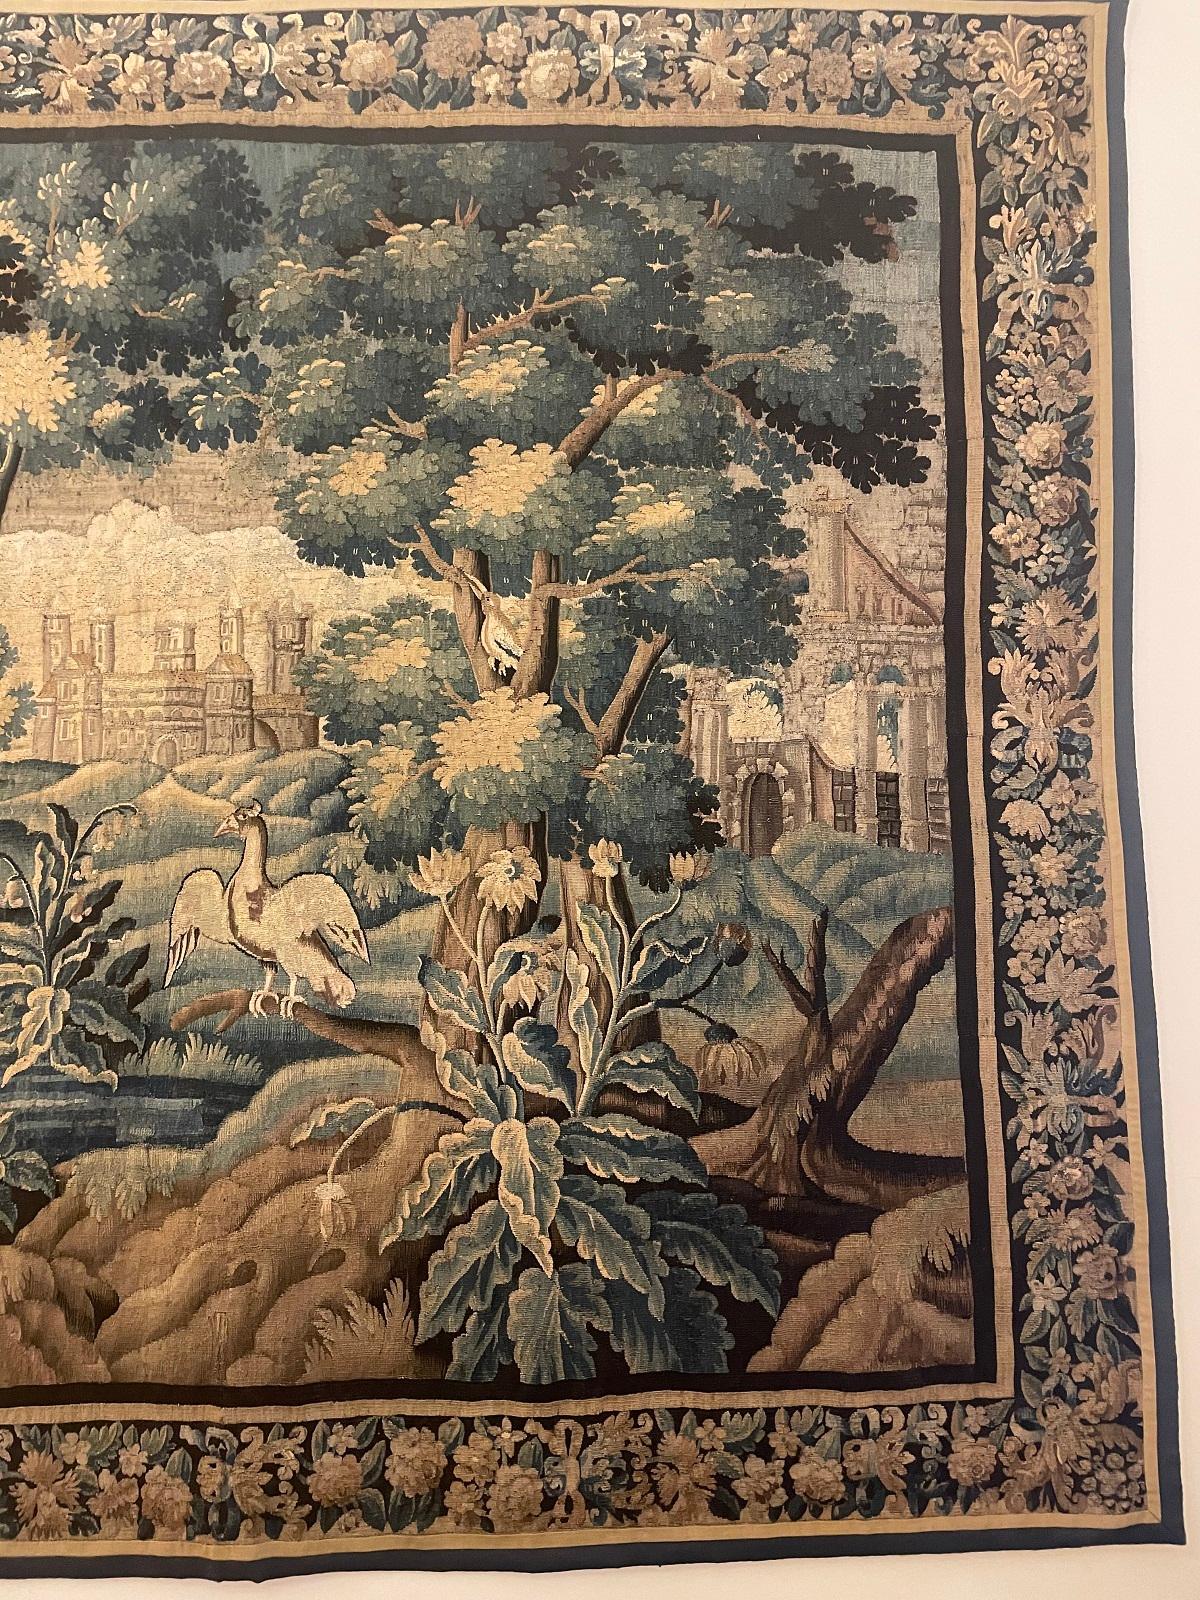 Ein feiner und sehr eindrucksvoller Aubusson-Wandteppich vom Ende des 17. Jahrhunderts, der eine sehr schöne Landschaft mit einem Schloss, alten Runen eines Schlosses, einem Schwan und einem Falken darstellt 

Wandteppich in sehr gutem